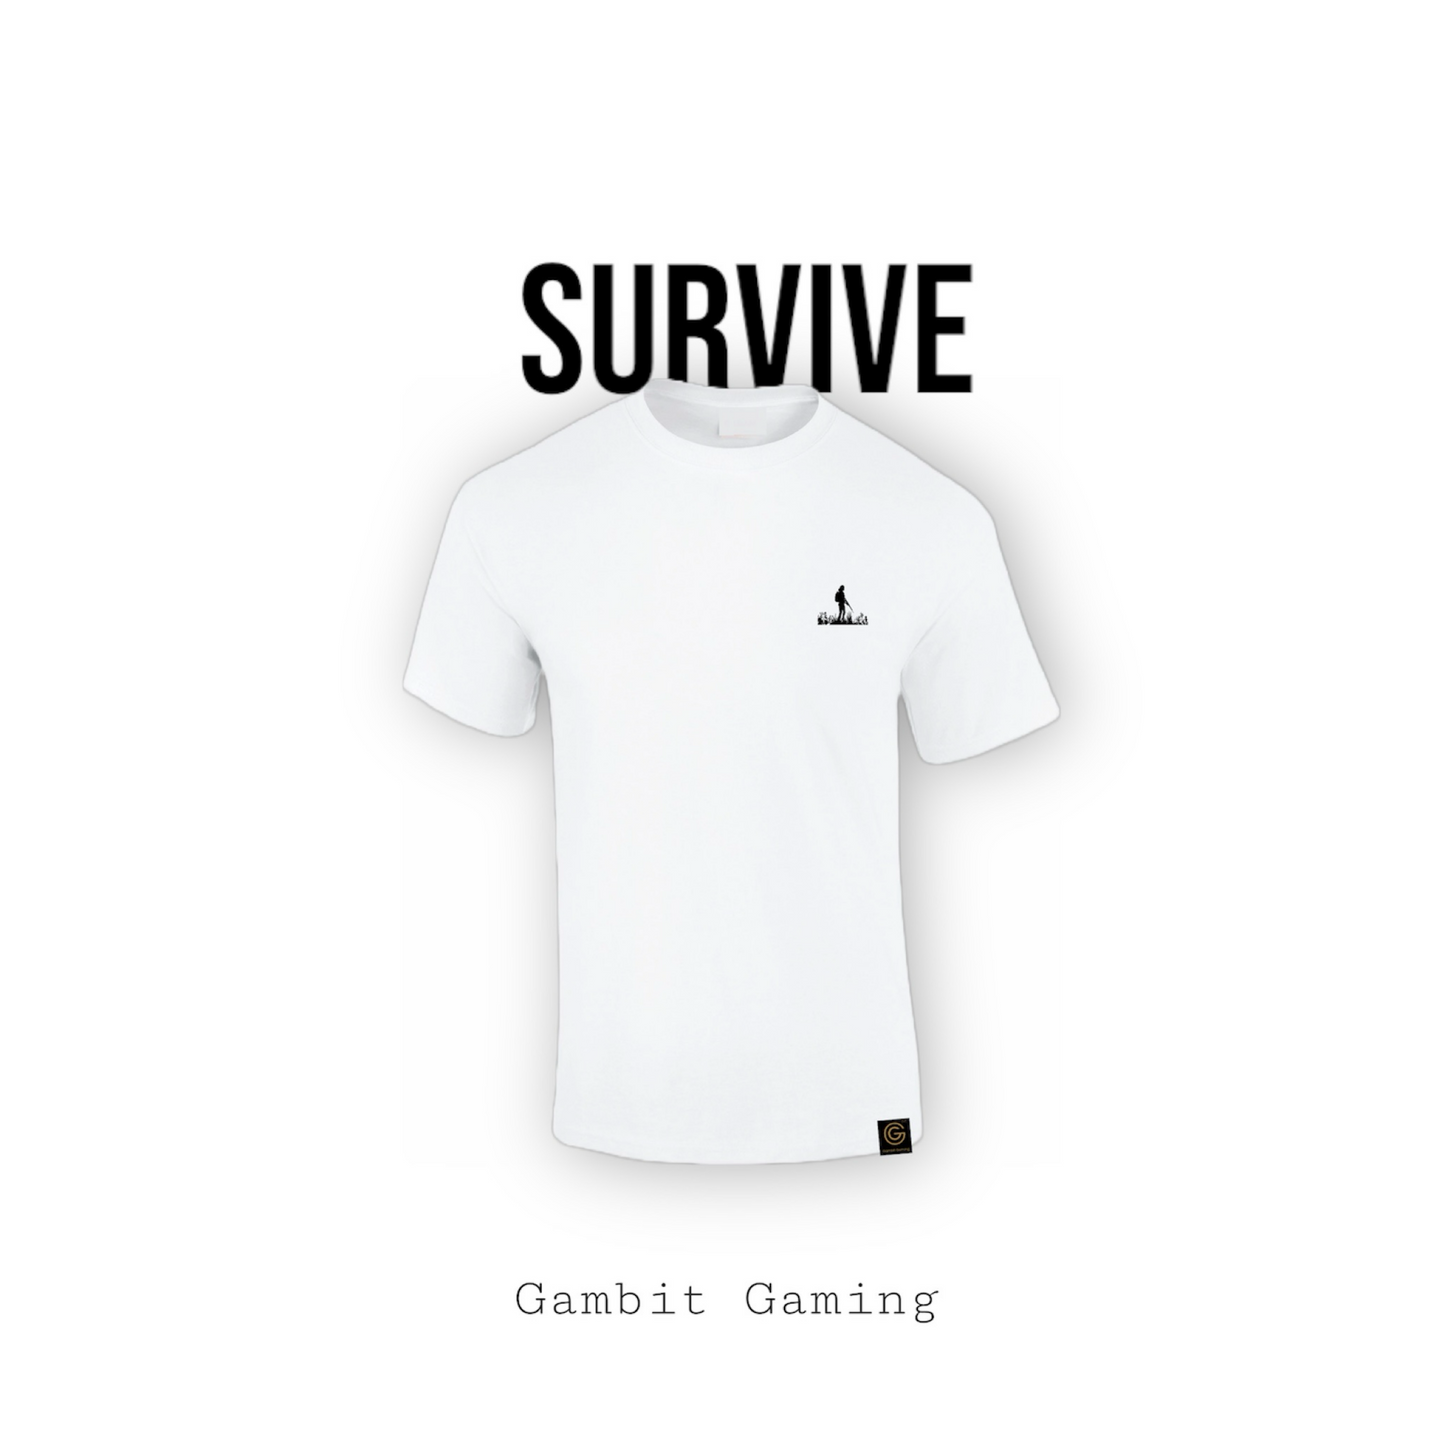 Survive - Gambit Gaming